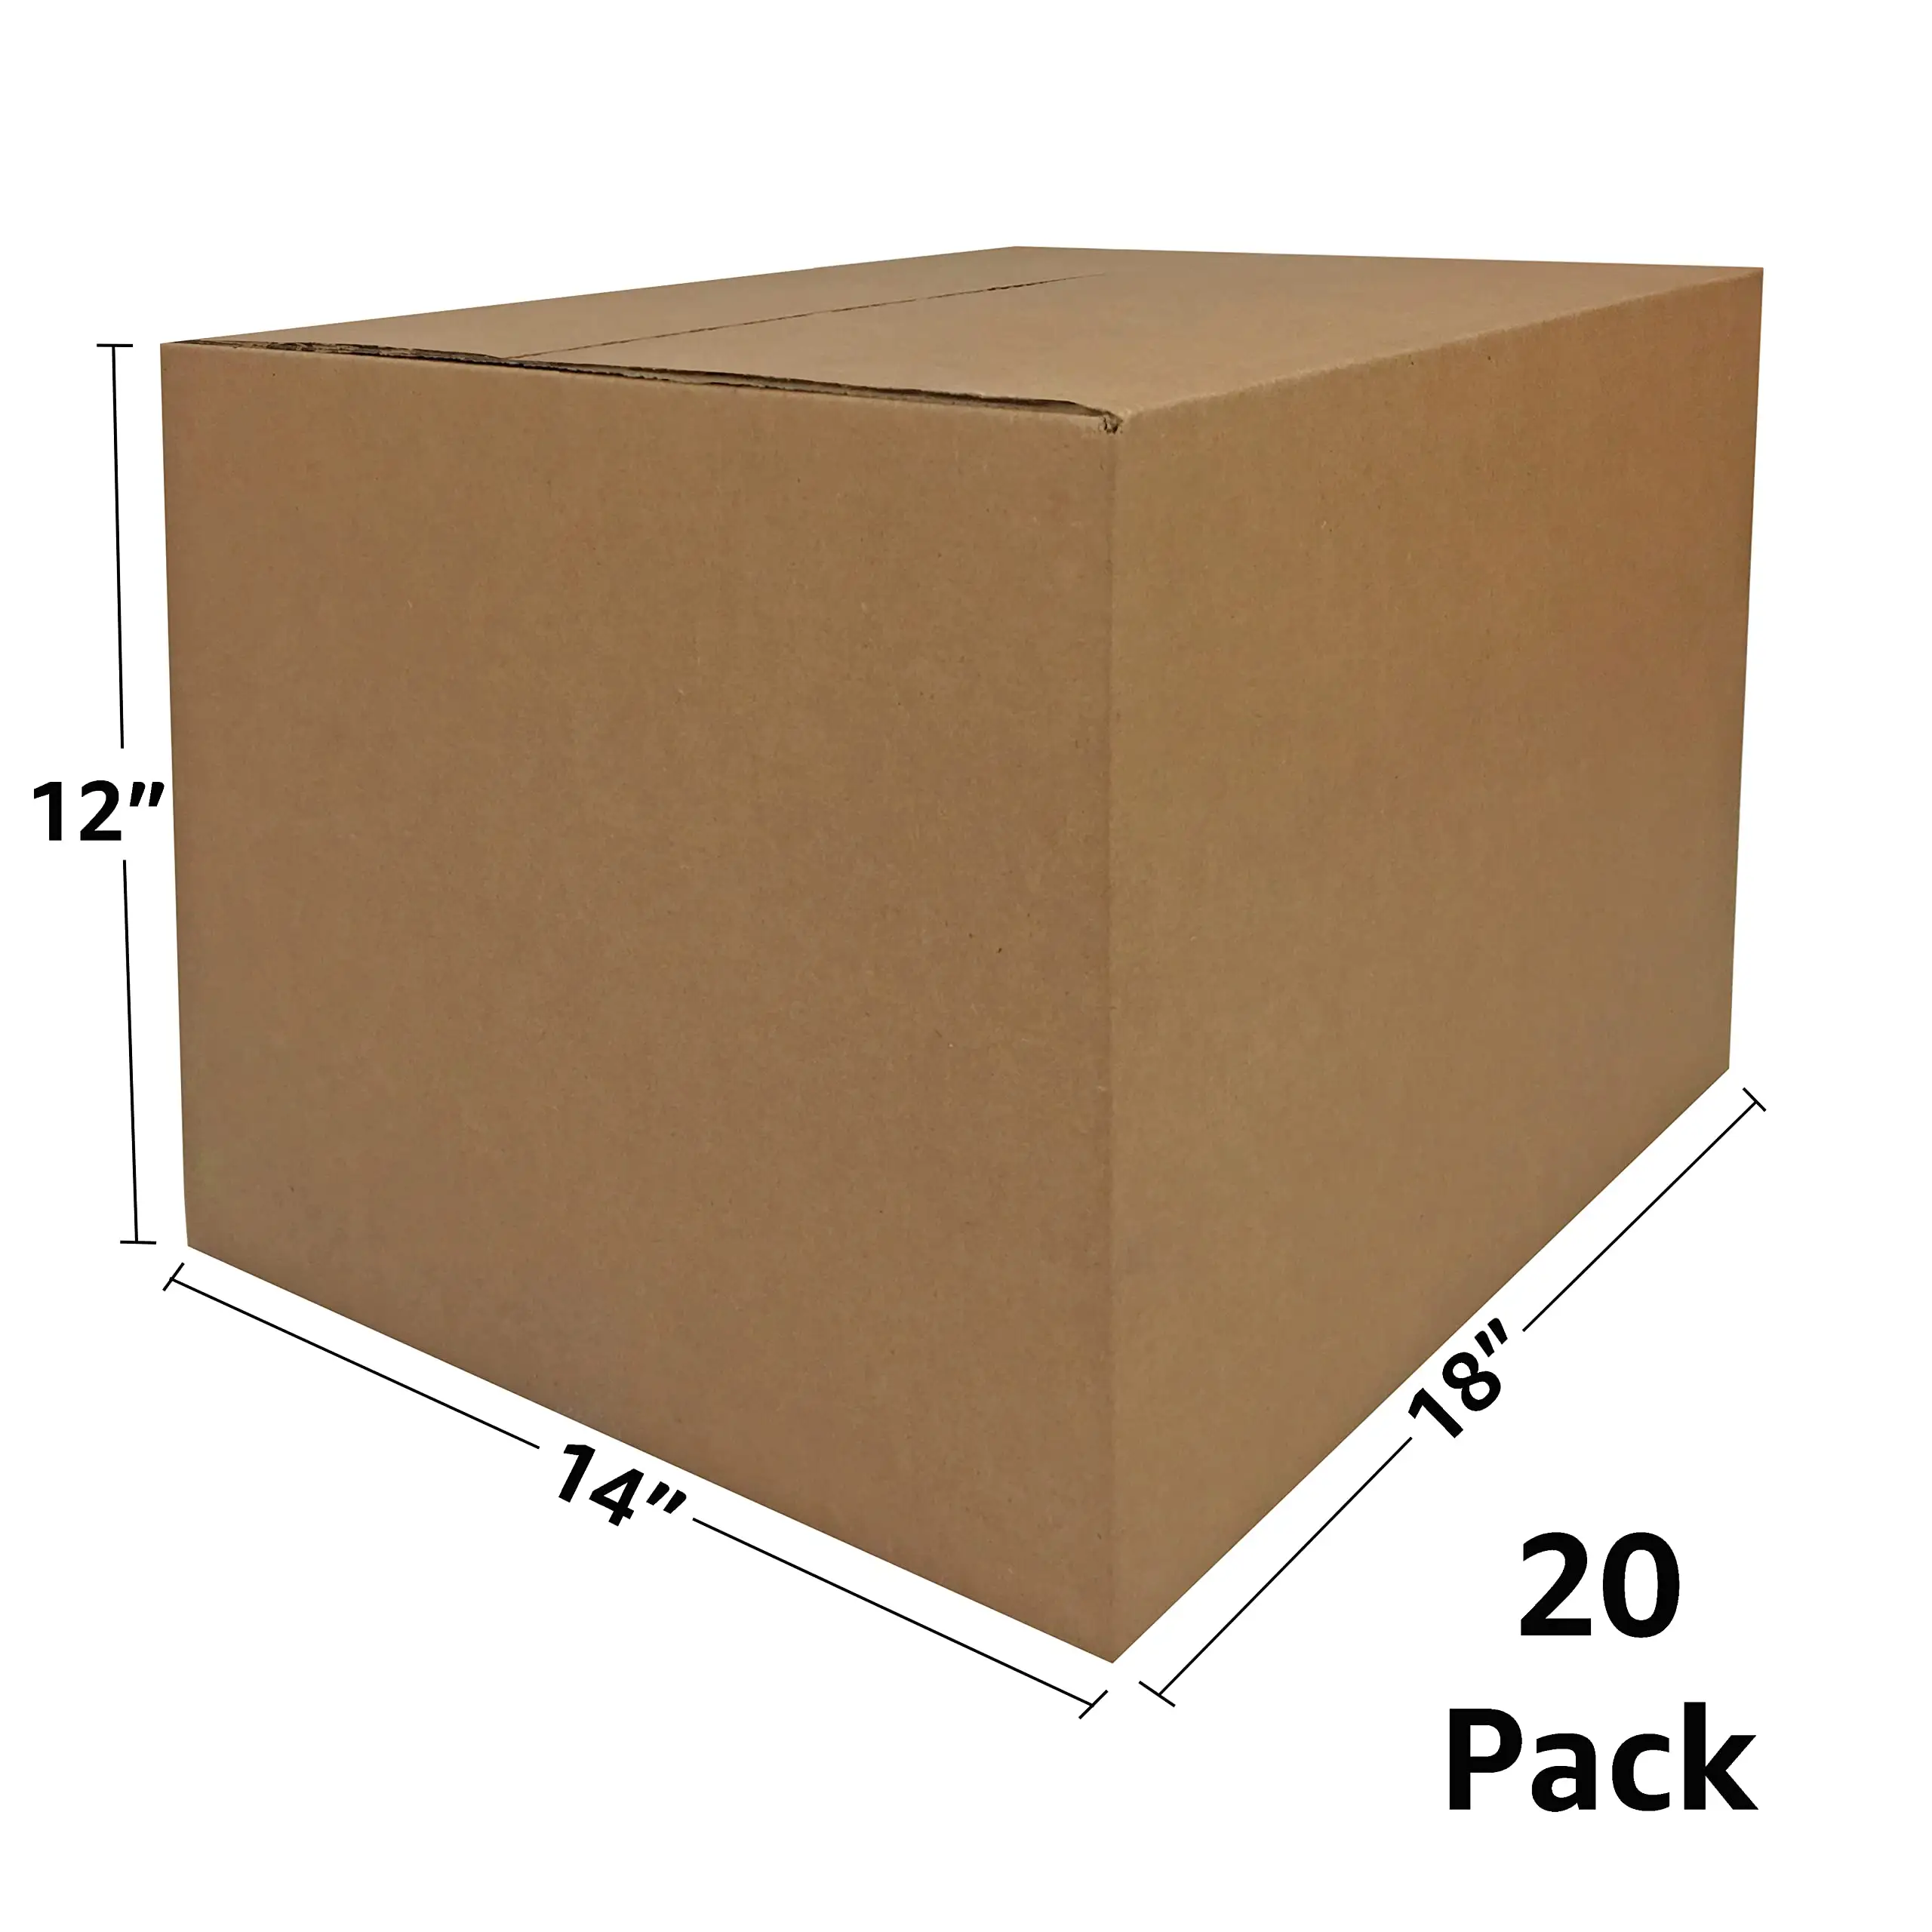 Personnaliser diverses spécifications robustes de cartons, boîtes de chiffre d'affaires et boîtes de déménagement